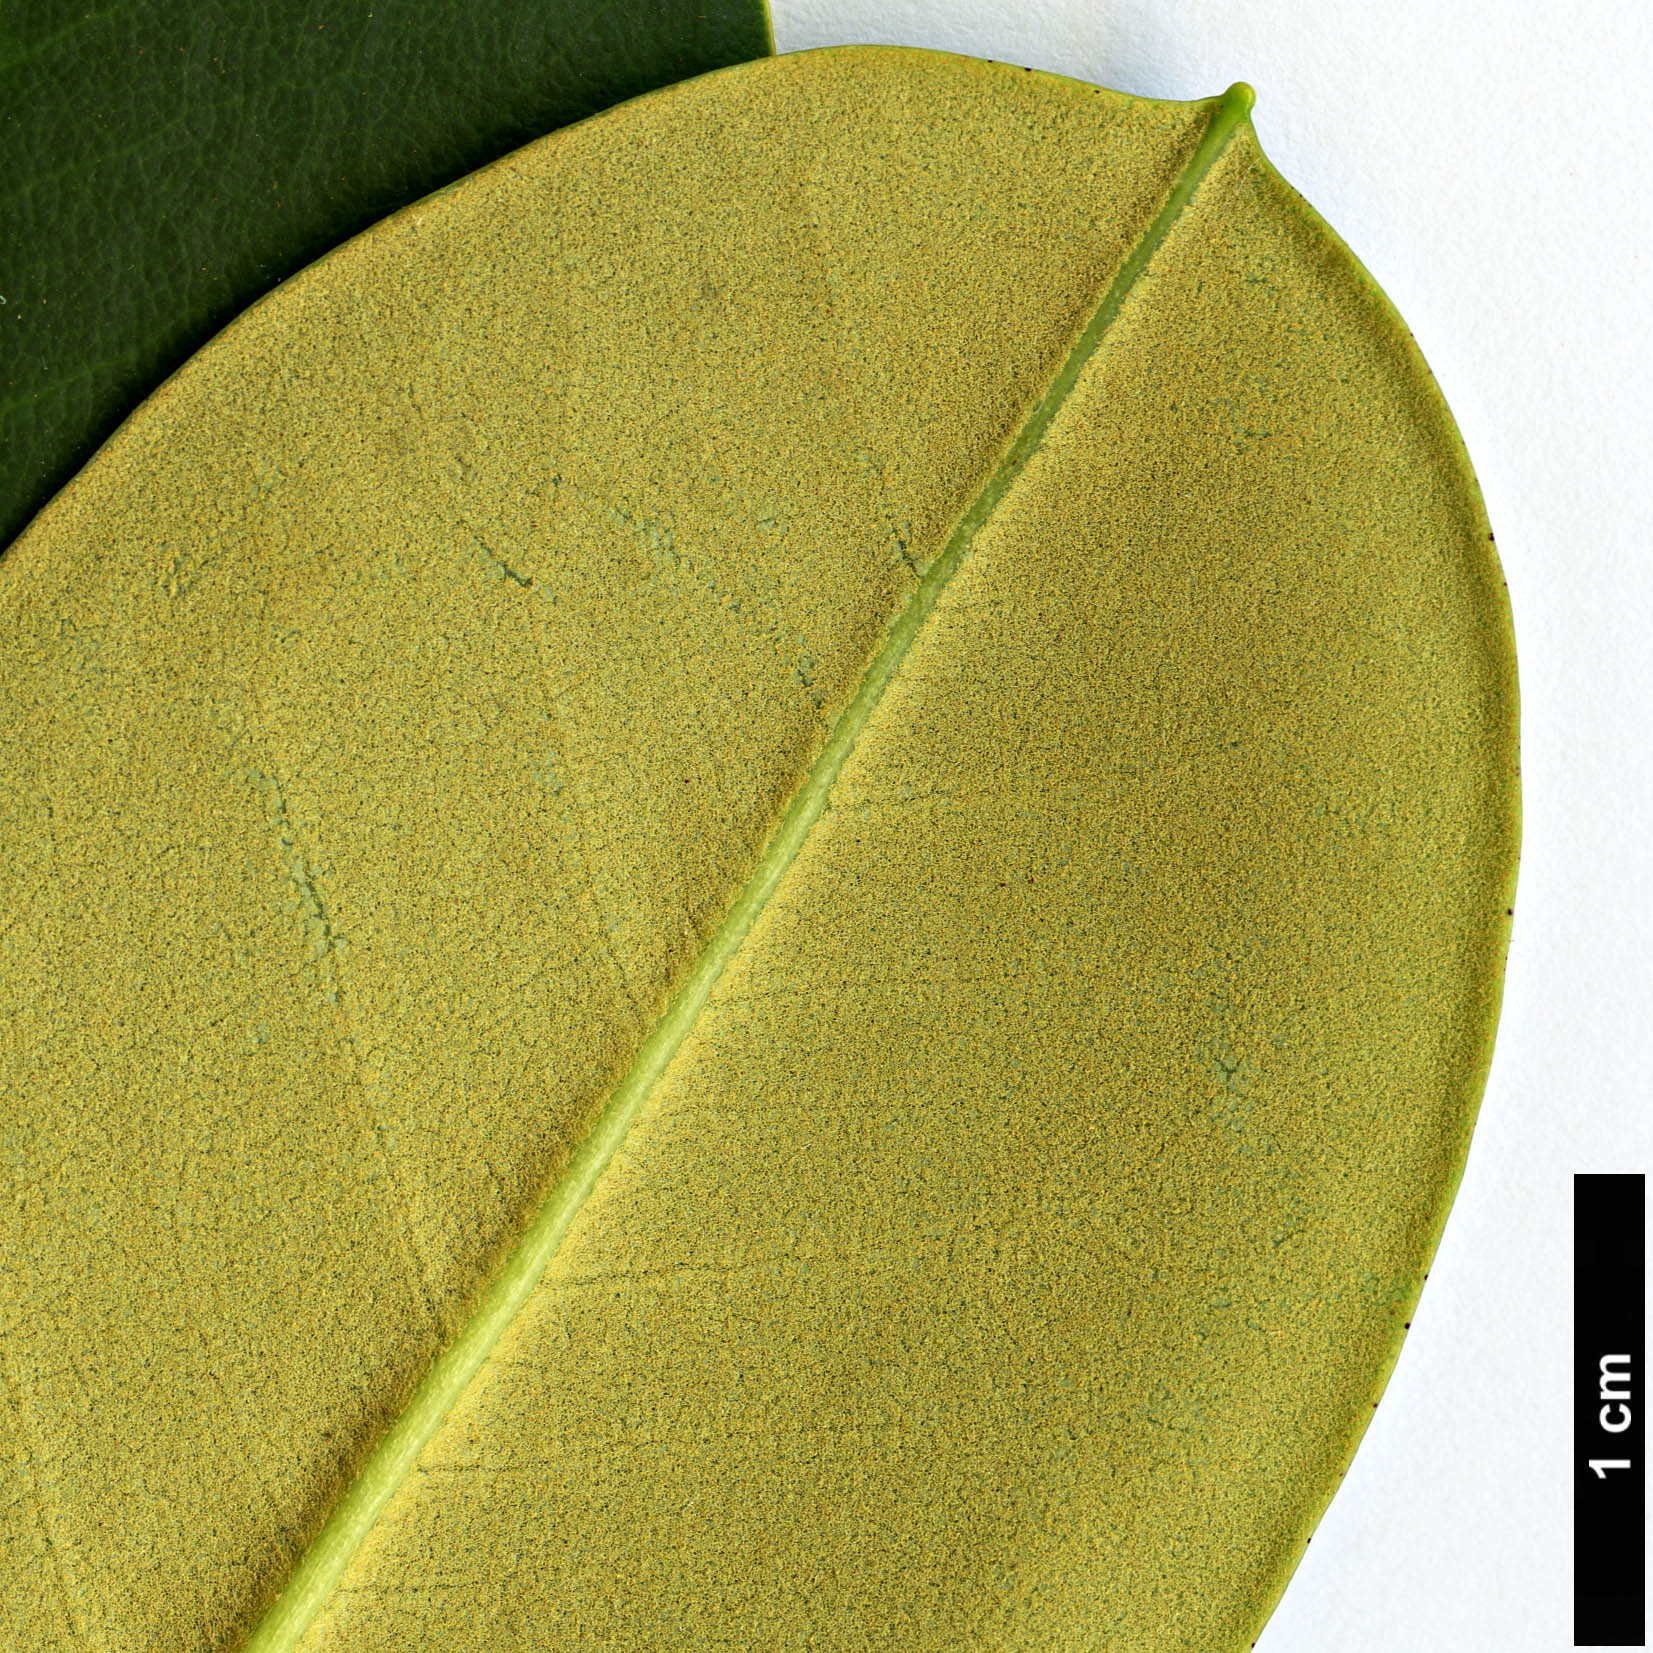 High resolution image: Family: Ericaceae - Genus: Rhododendron - Taxon: stewartianum